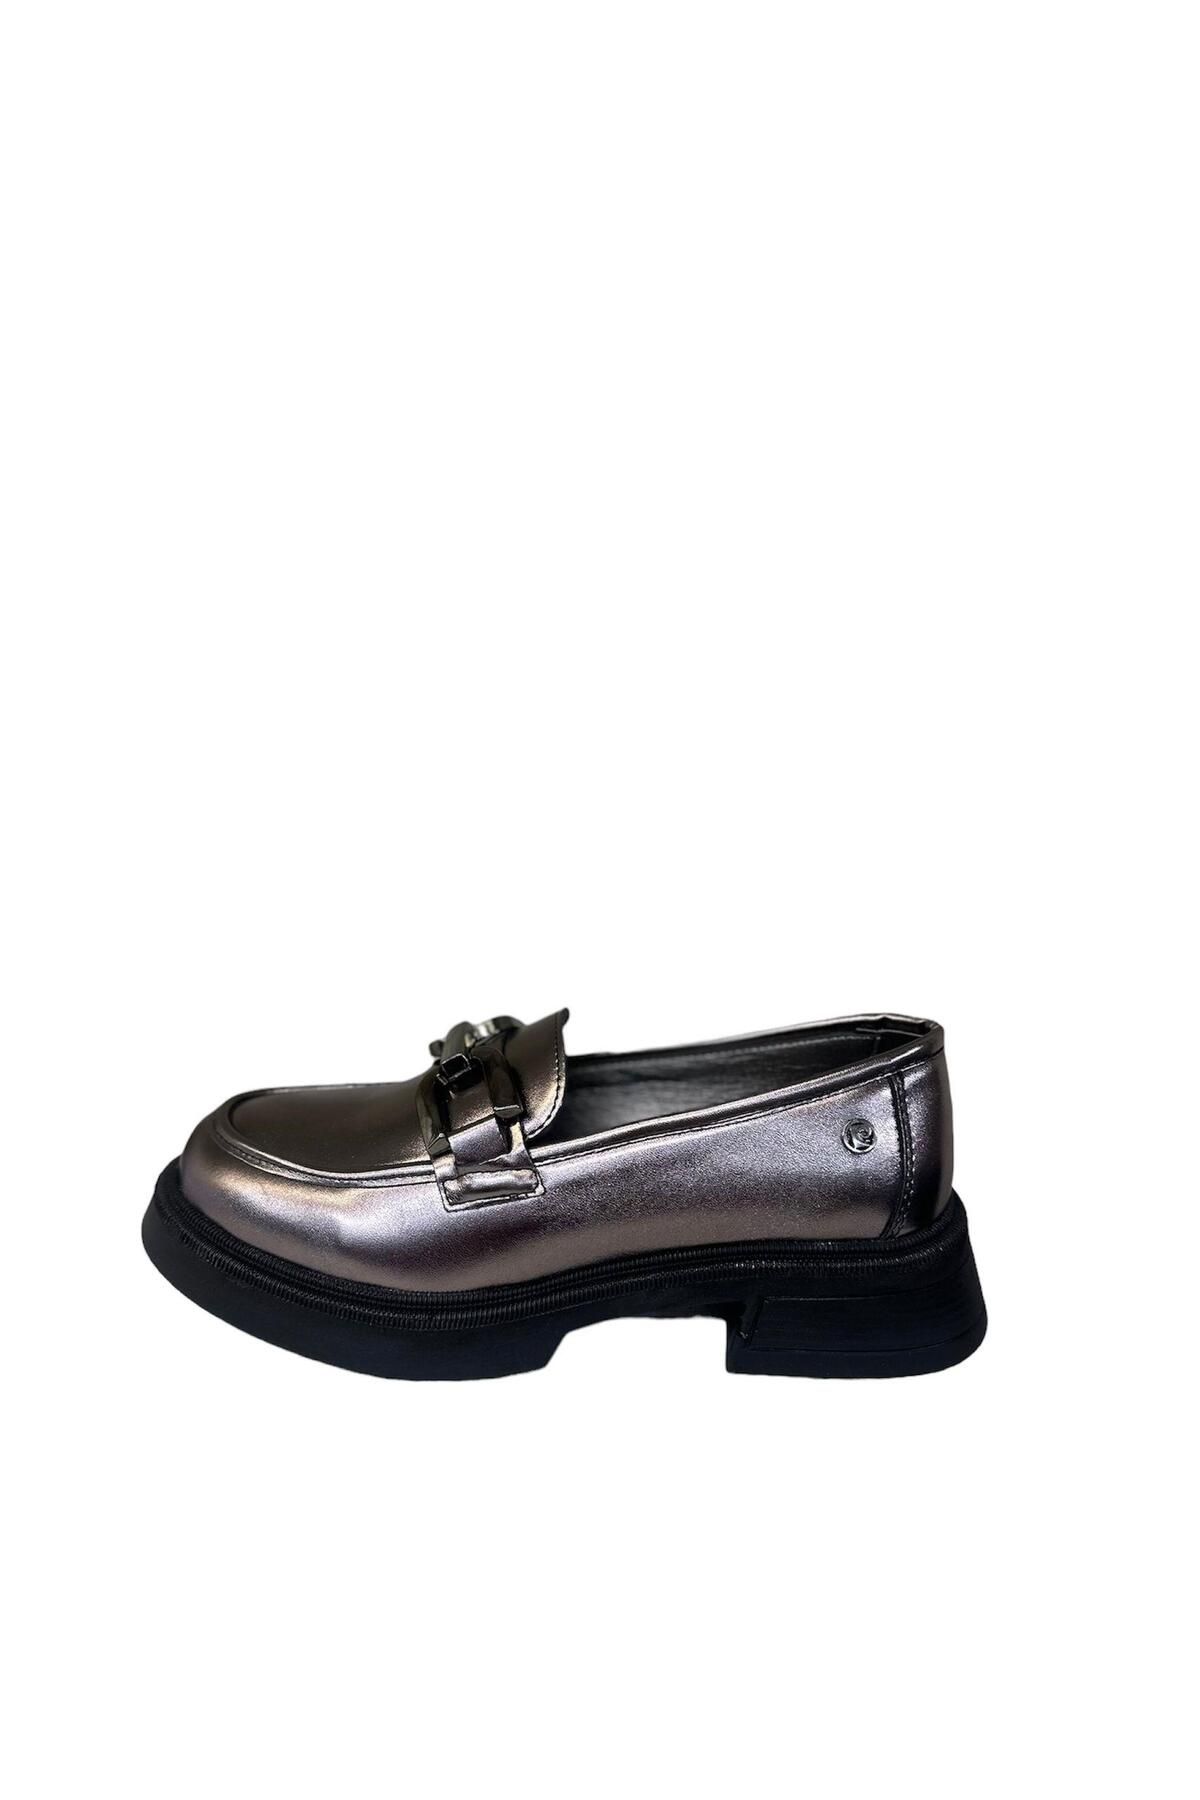 Pierre Cardin PİERRE CARDİN 53151 Kadın Loafer Bağcıksız Toka Detaylı Günlük Klasik Kadın Ayakkabı